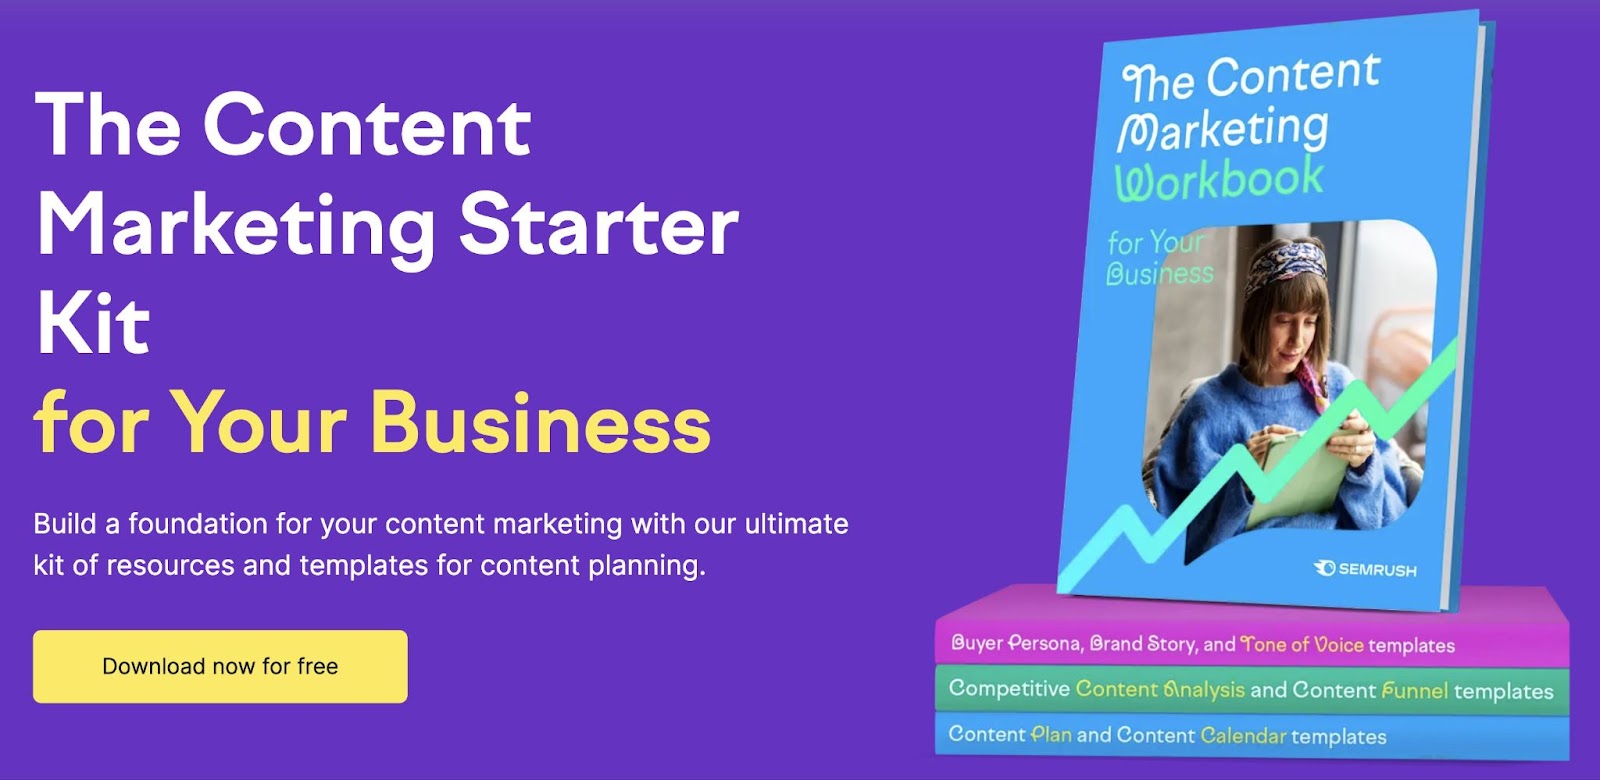 The content marketing starter kit from Semrush